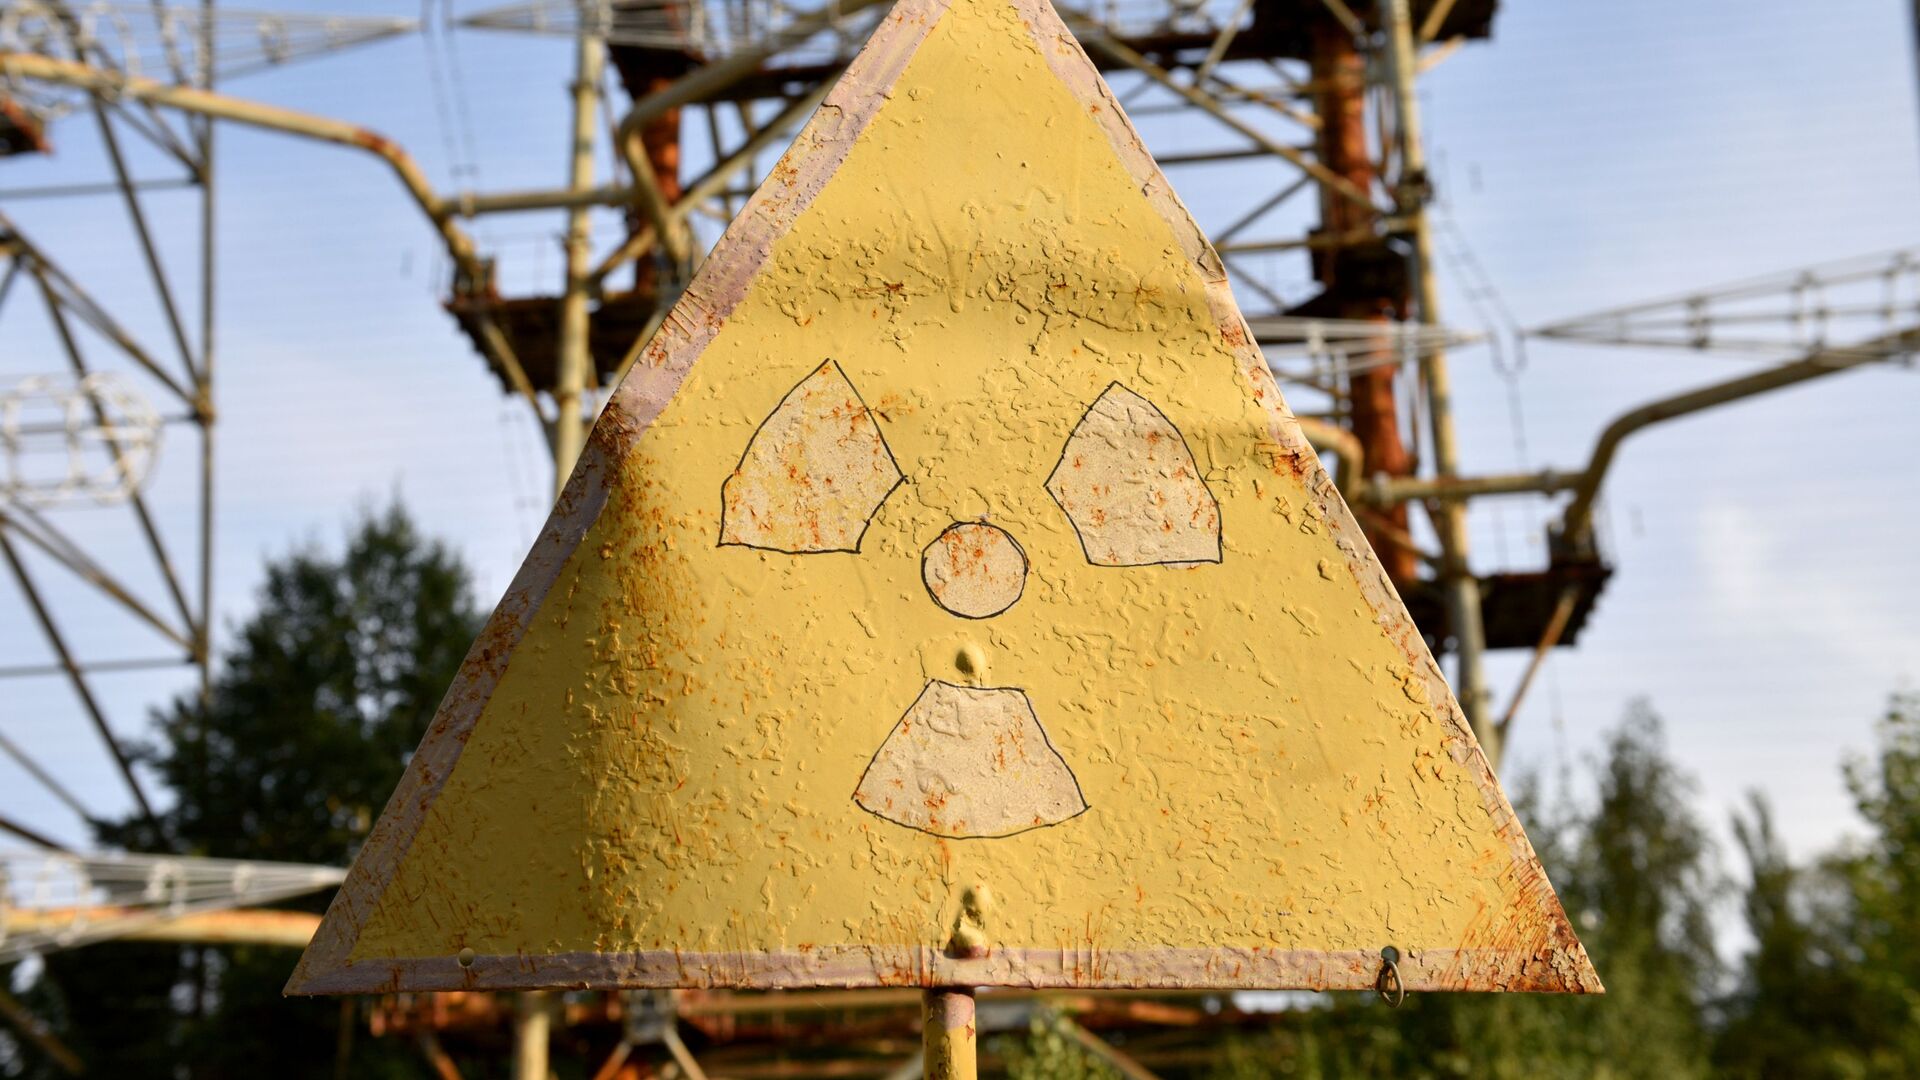 Знак радиации в зоне отчуждения Чернобыльской АЭС - Sputnik Lietuva, 1920, 26.04.2021